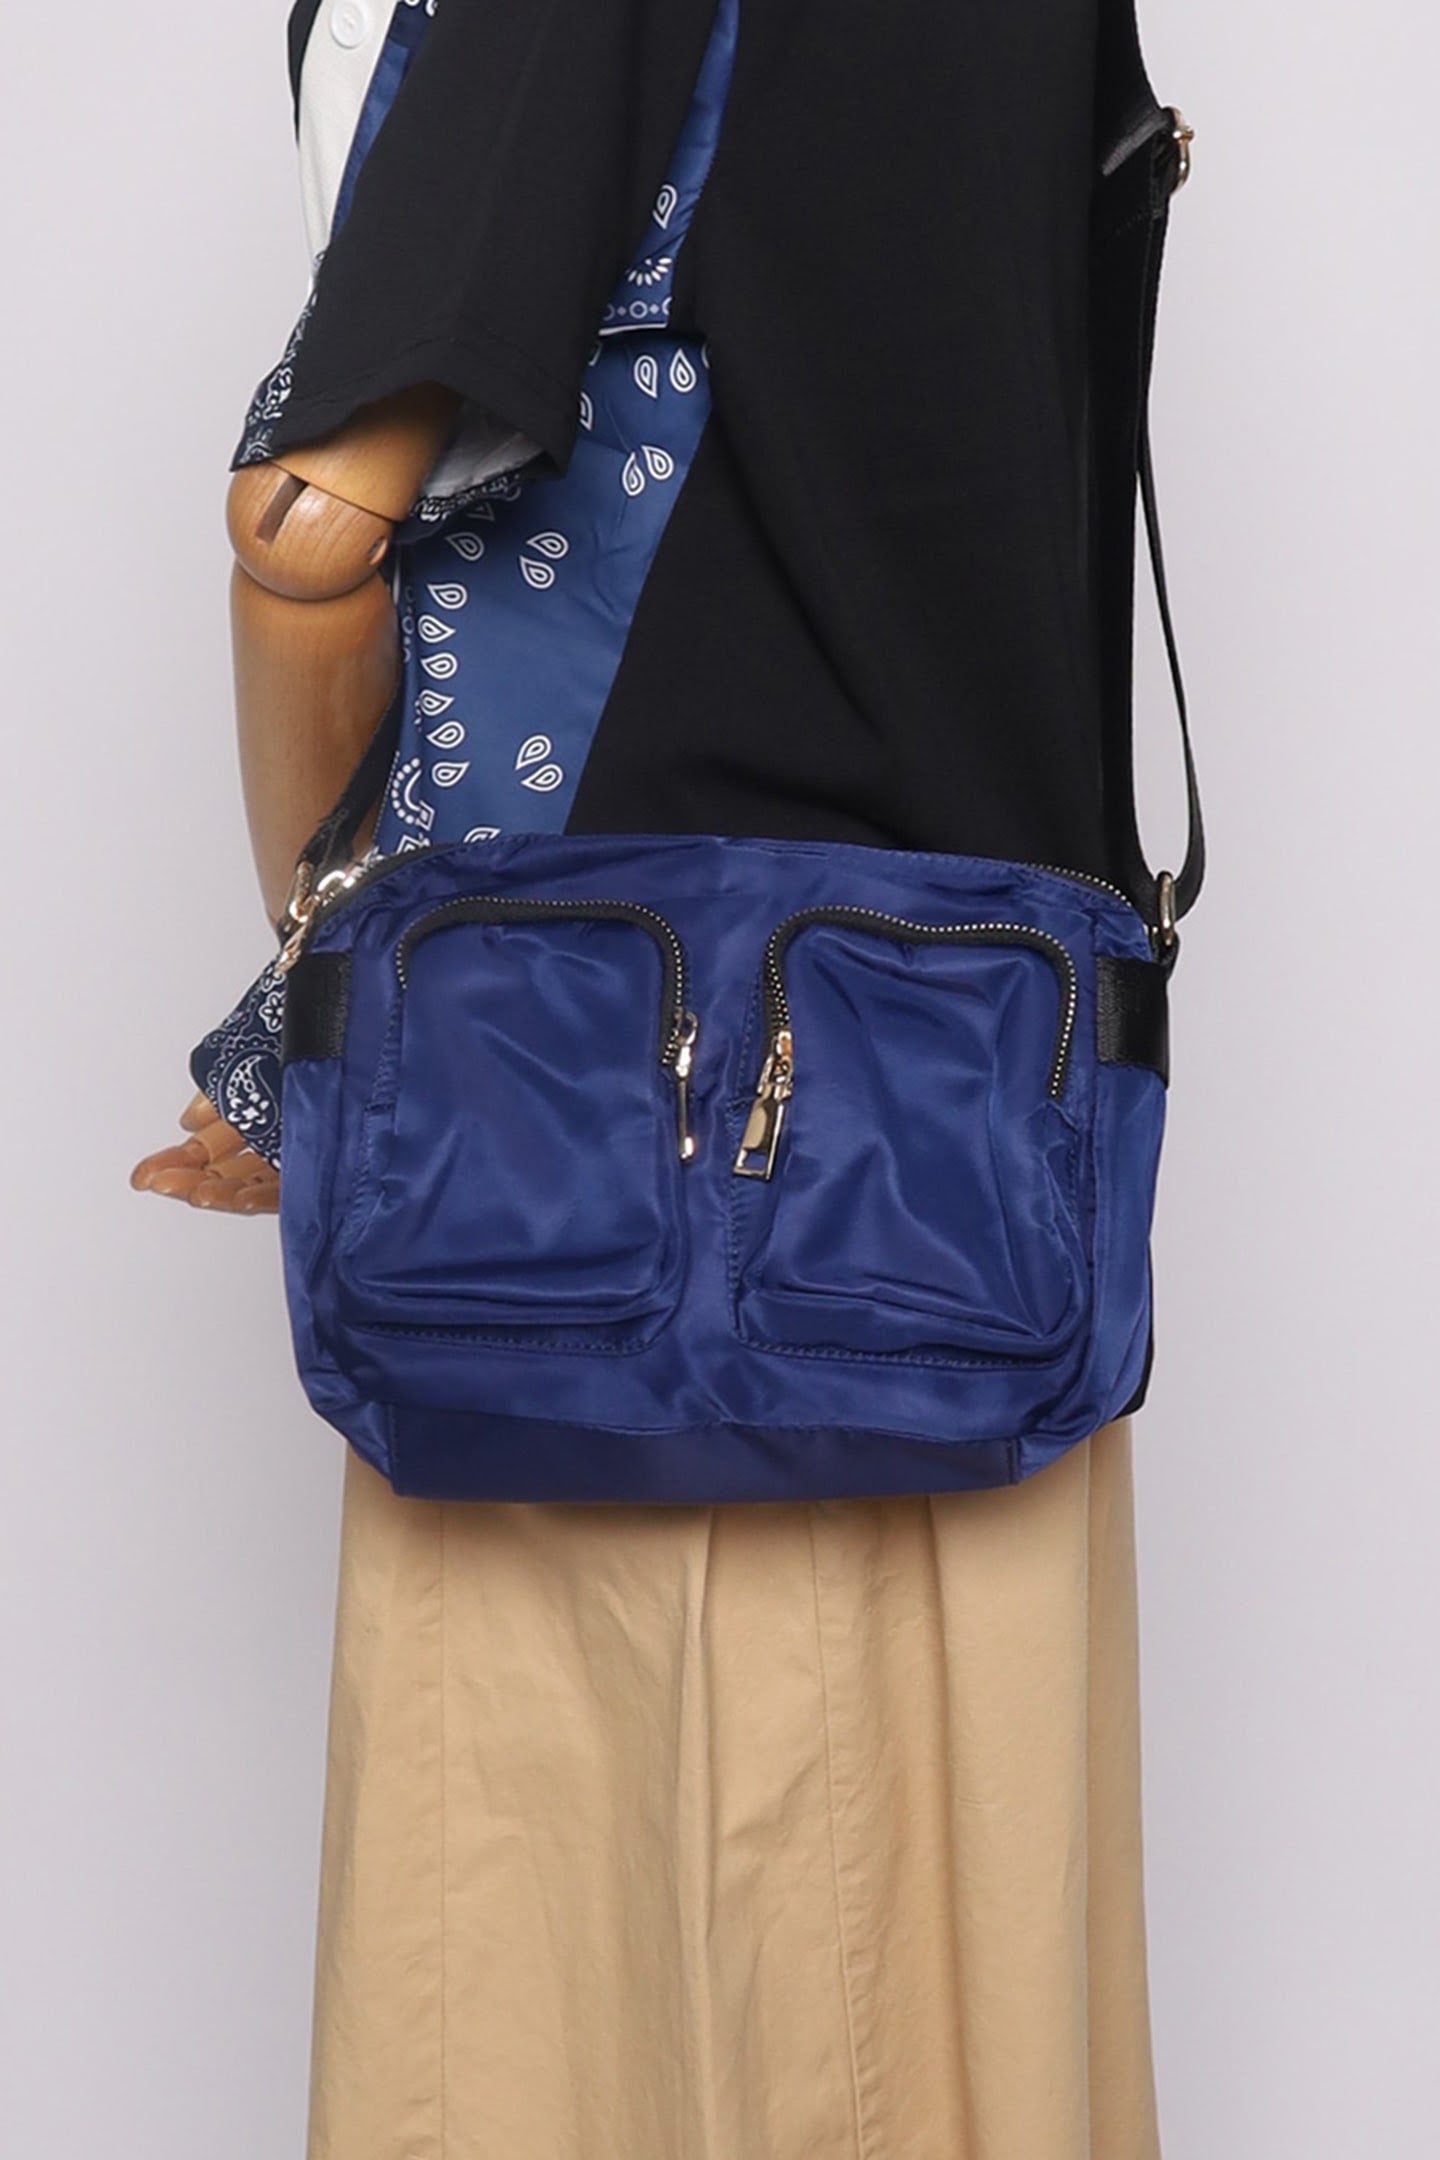 Melly Pocket Bag in Blue